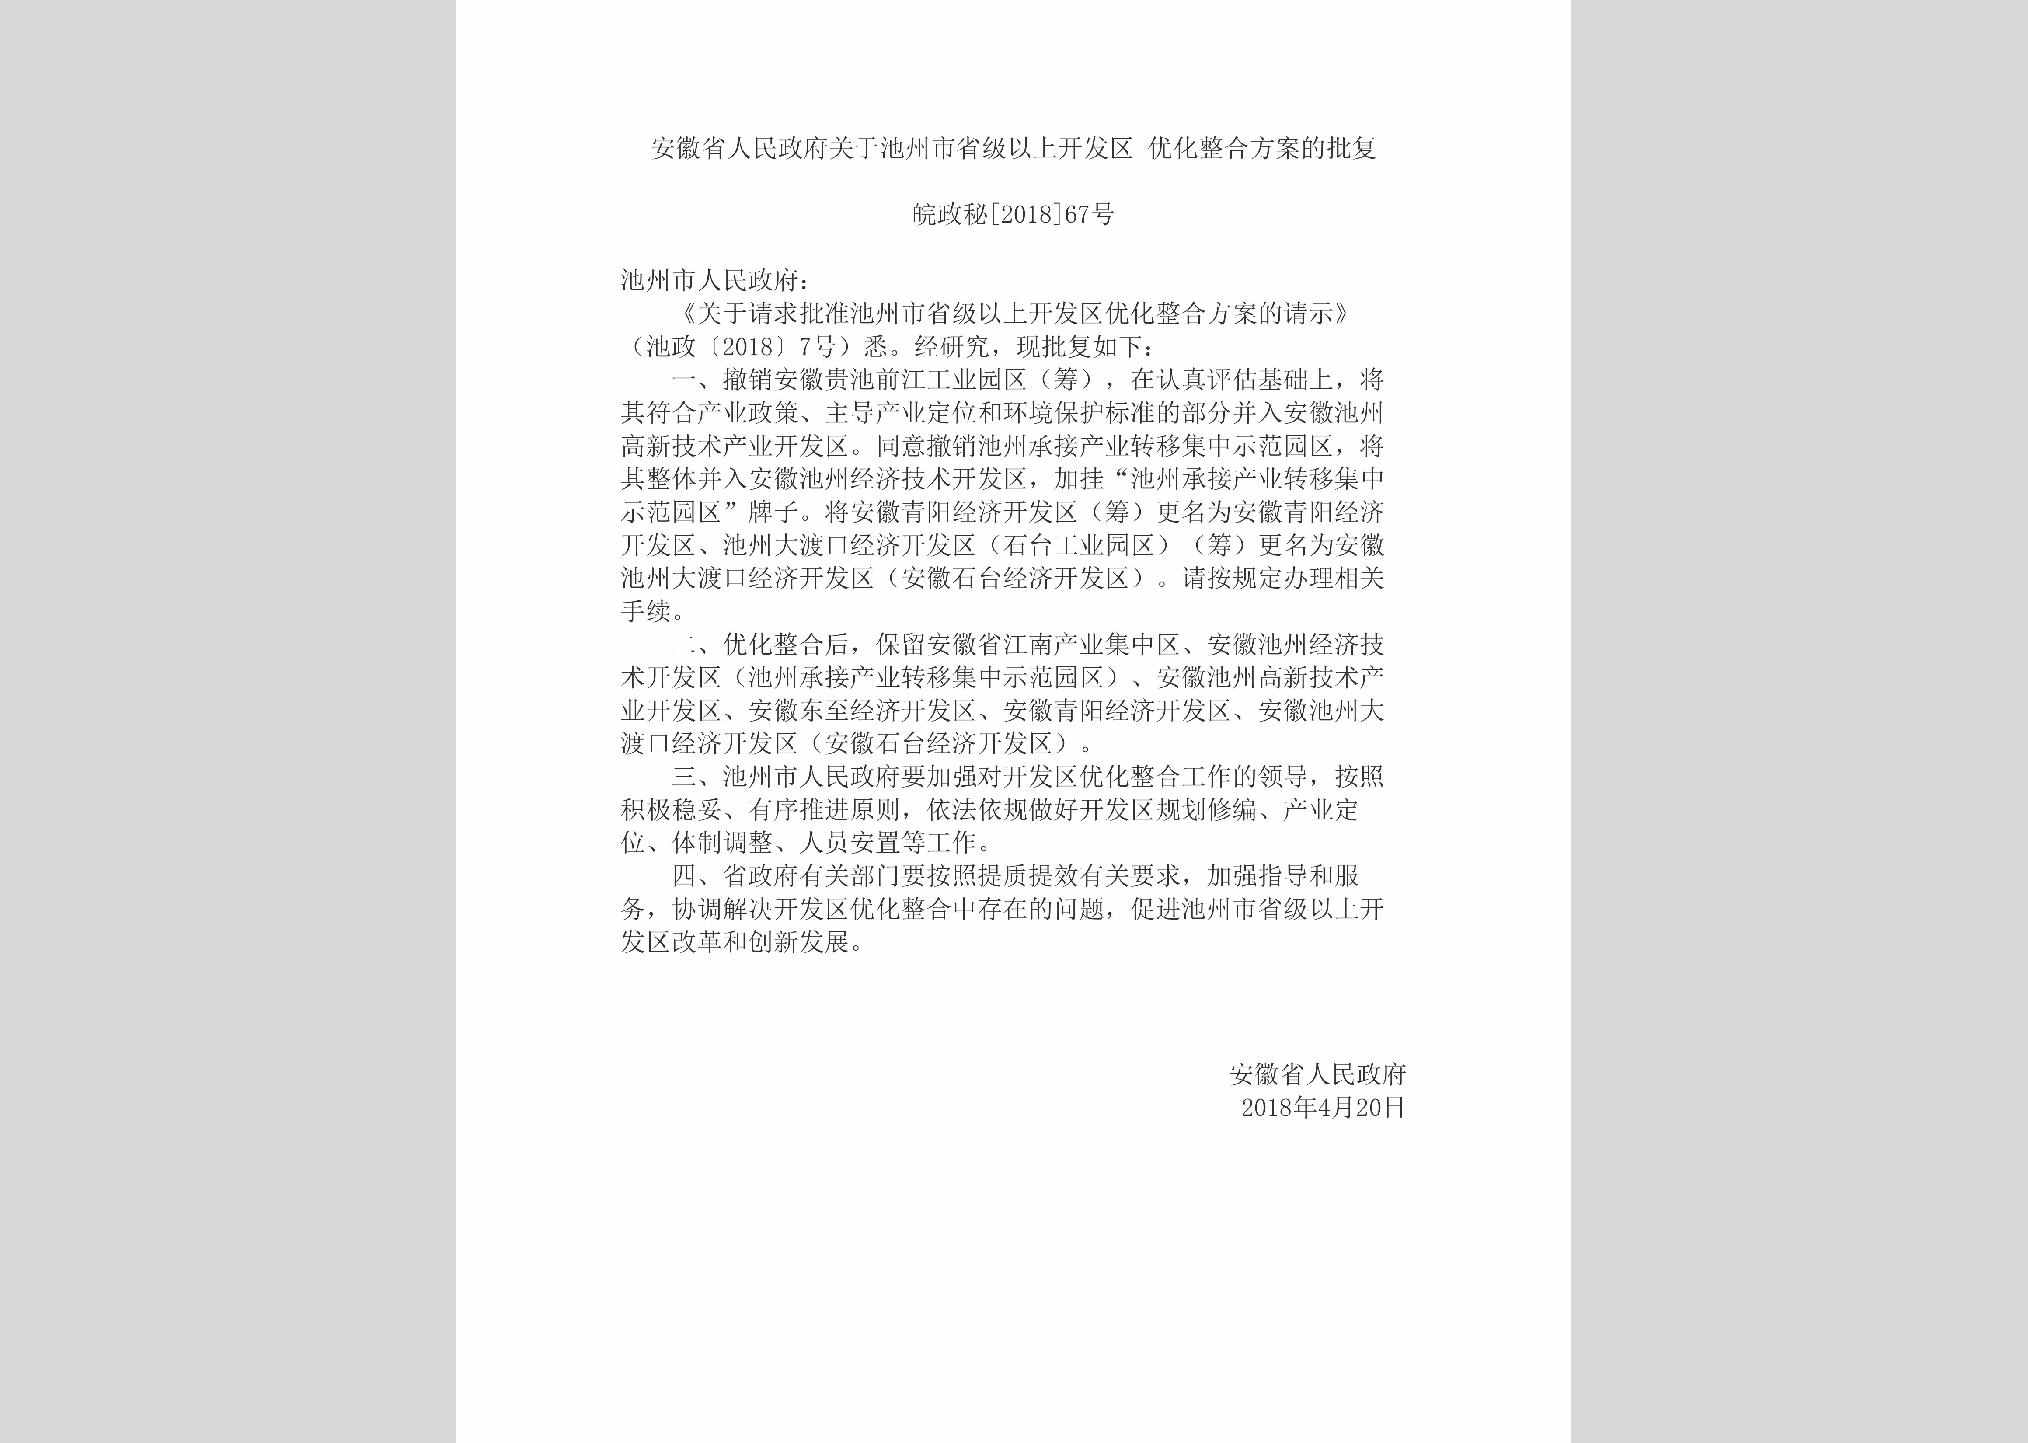 皖政秘[2018]67号：安徽省人民政府关于池州市省级以上开发区优化整合方案的批复